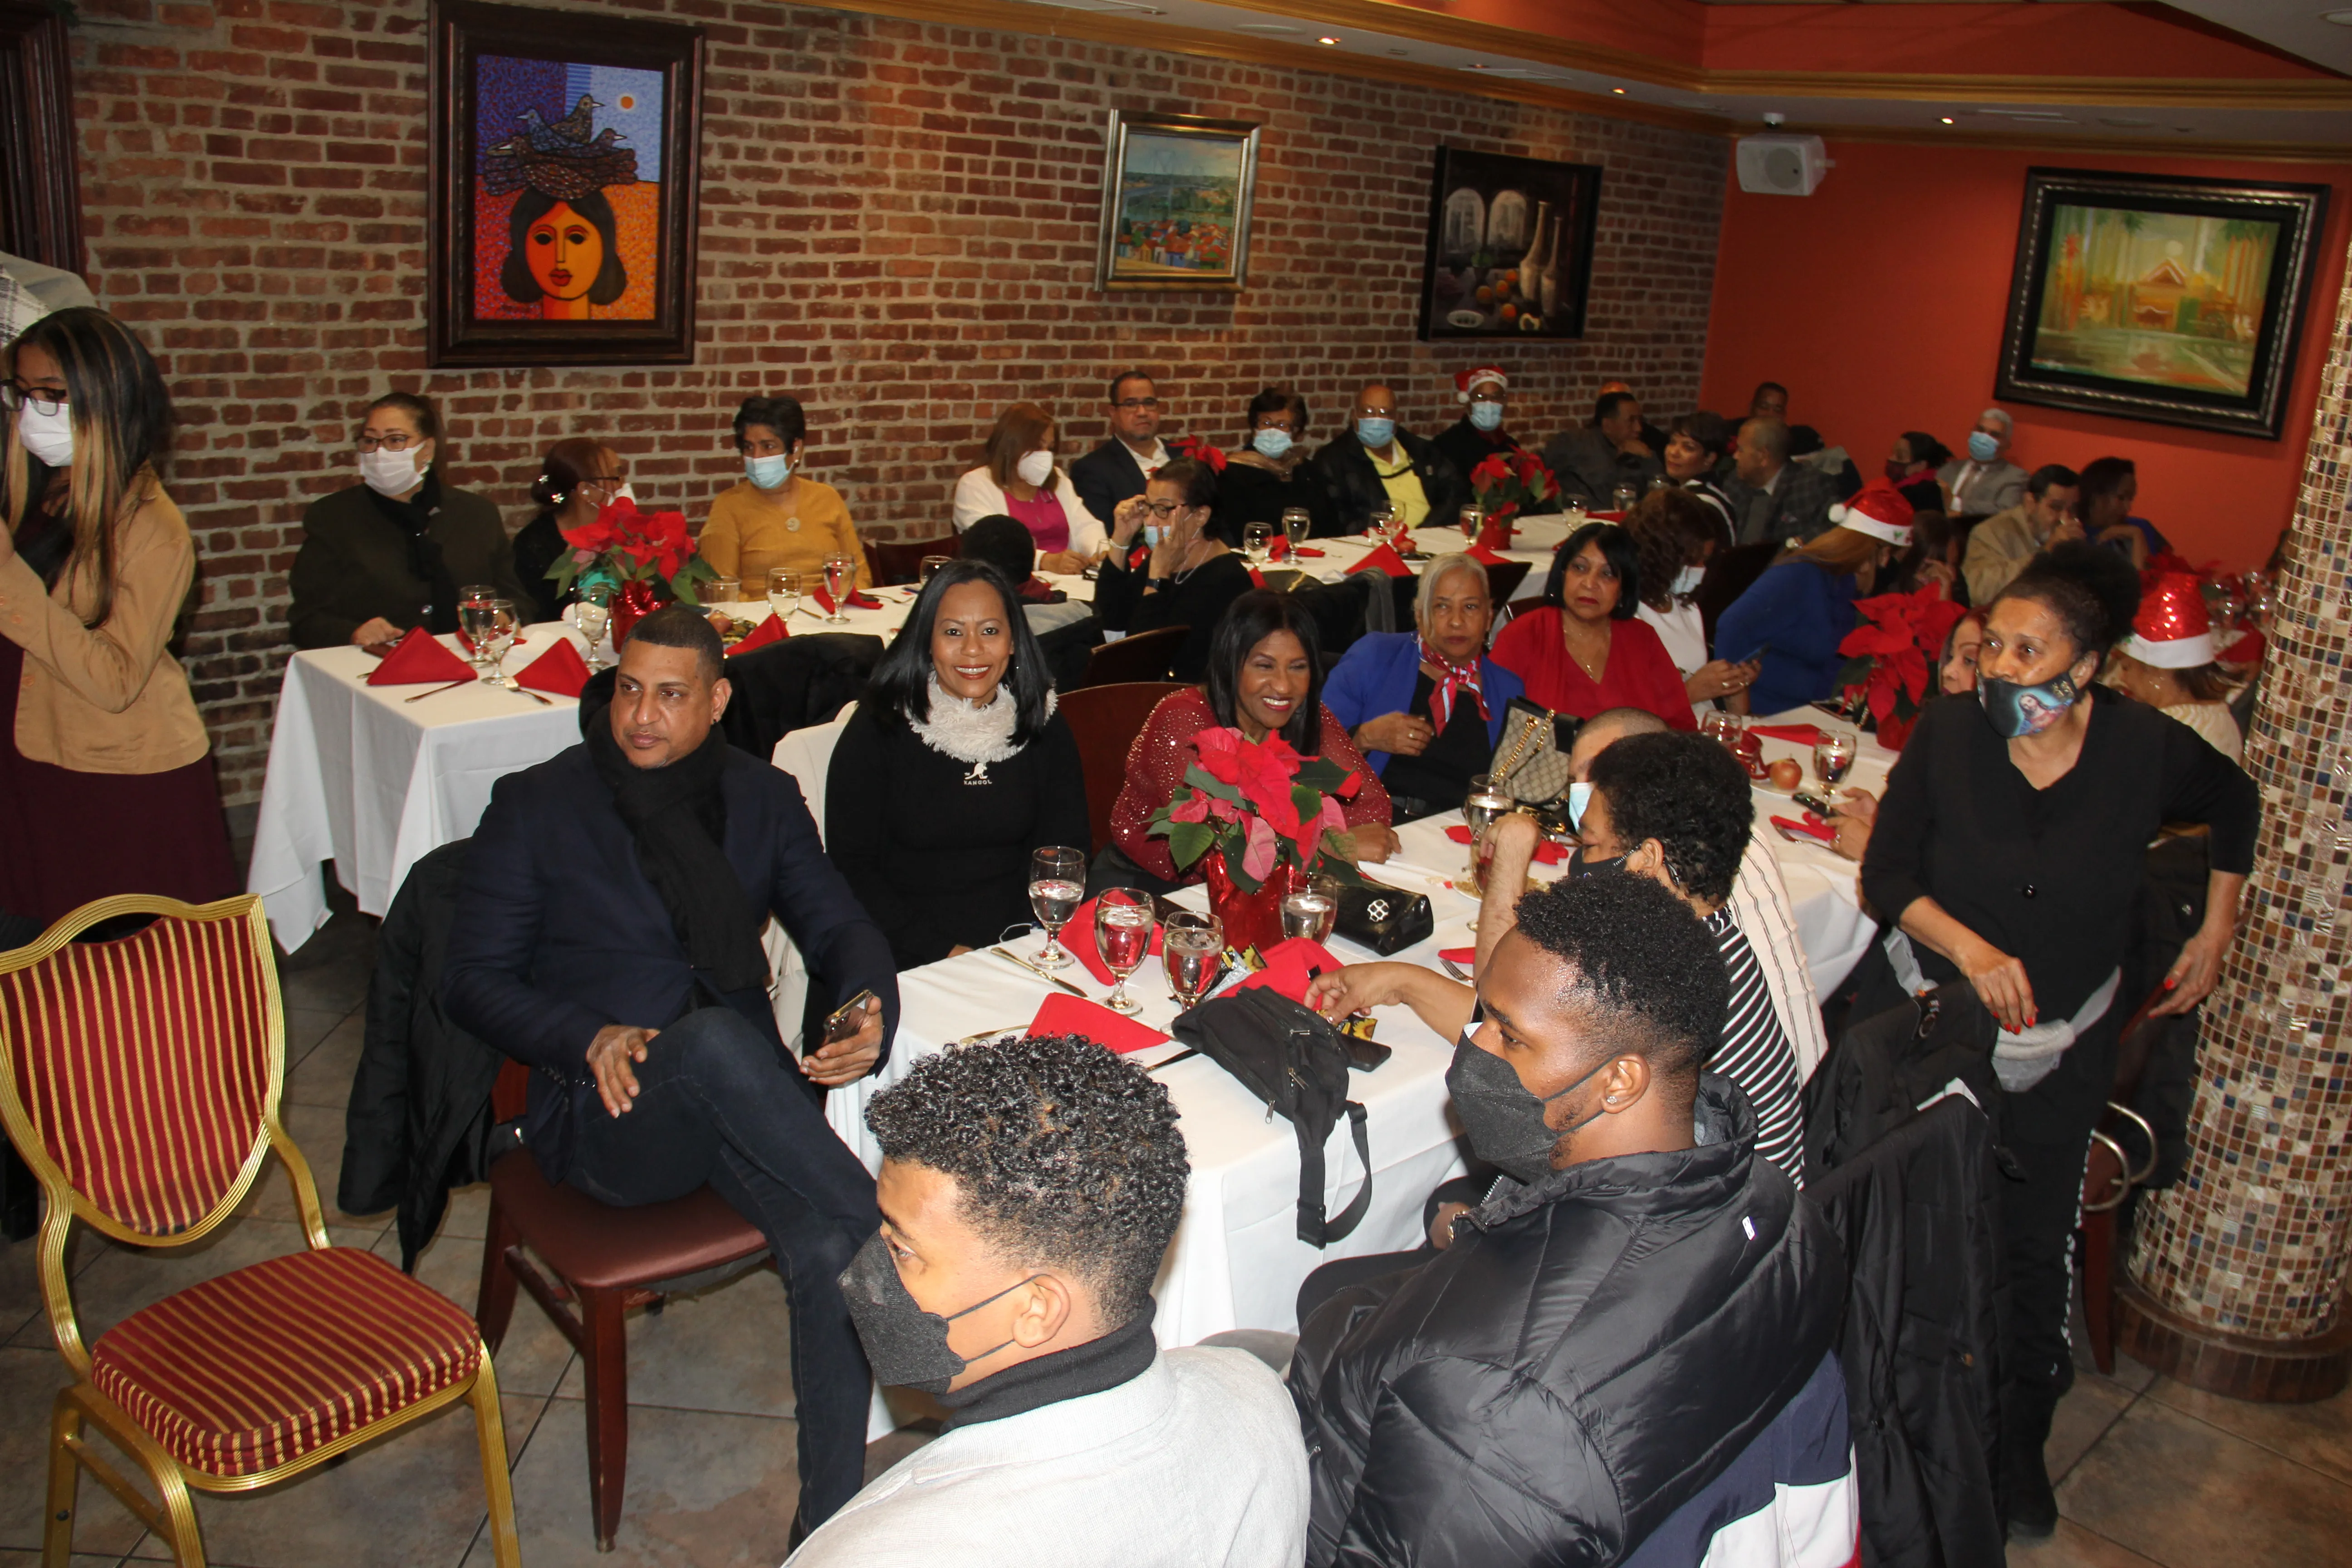 Periodistas dominicanos en Nueva York celebran fiesta navideña